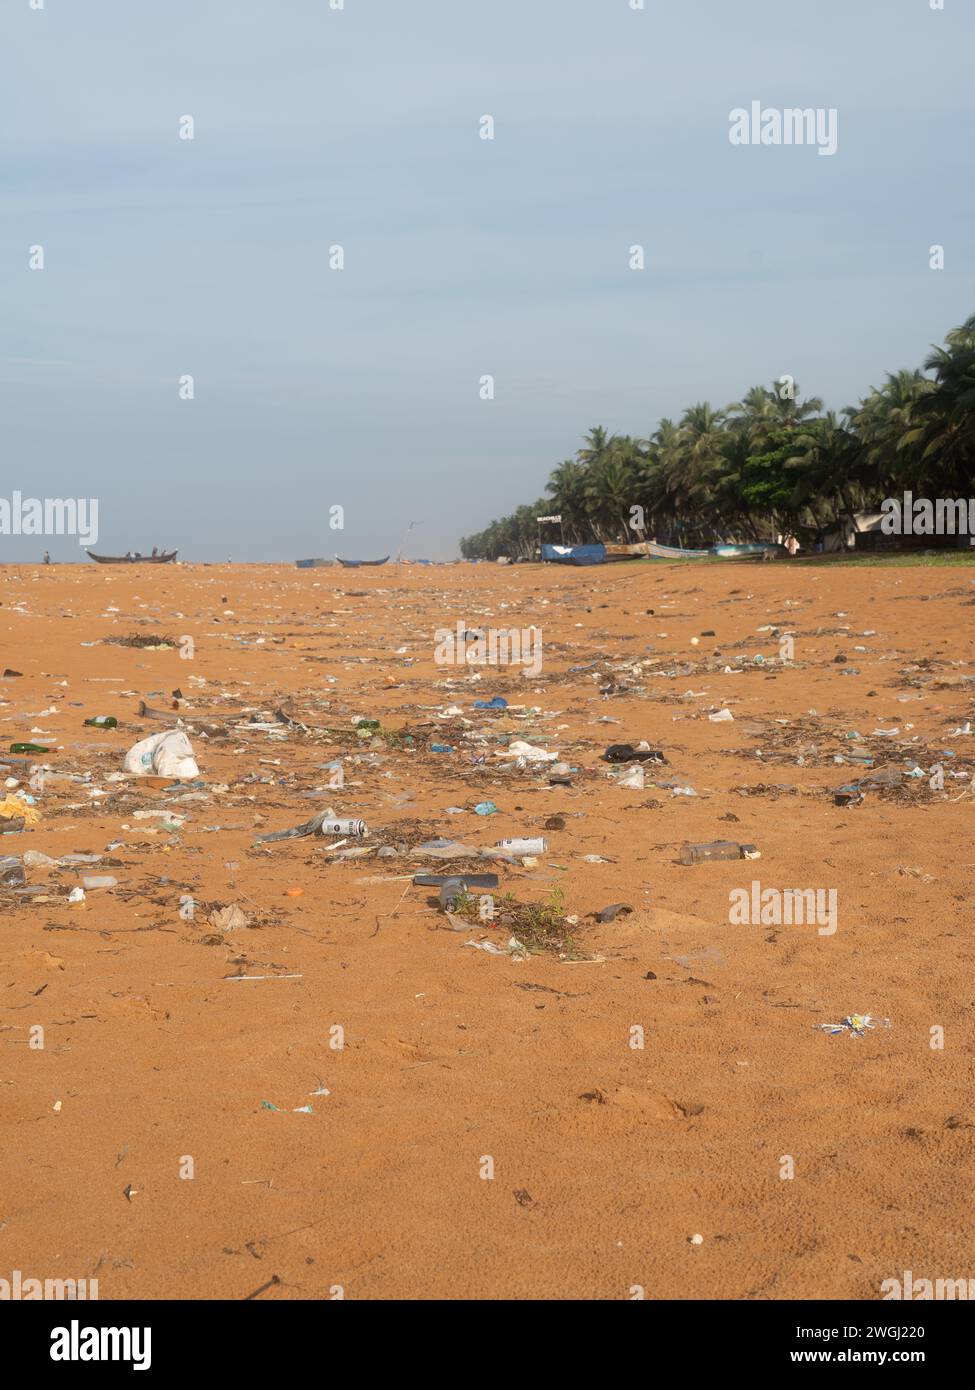 Spazzatura sulla spiaggia. Problemi ecologici nel mondo Foto Stock